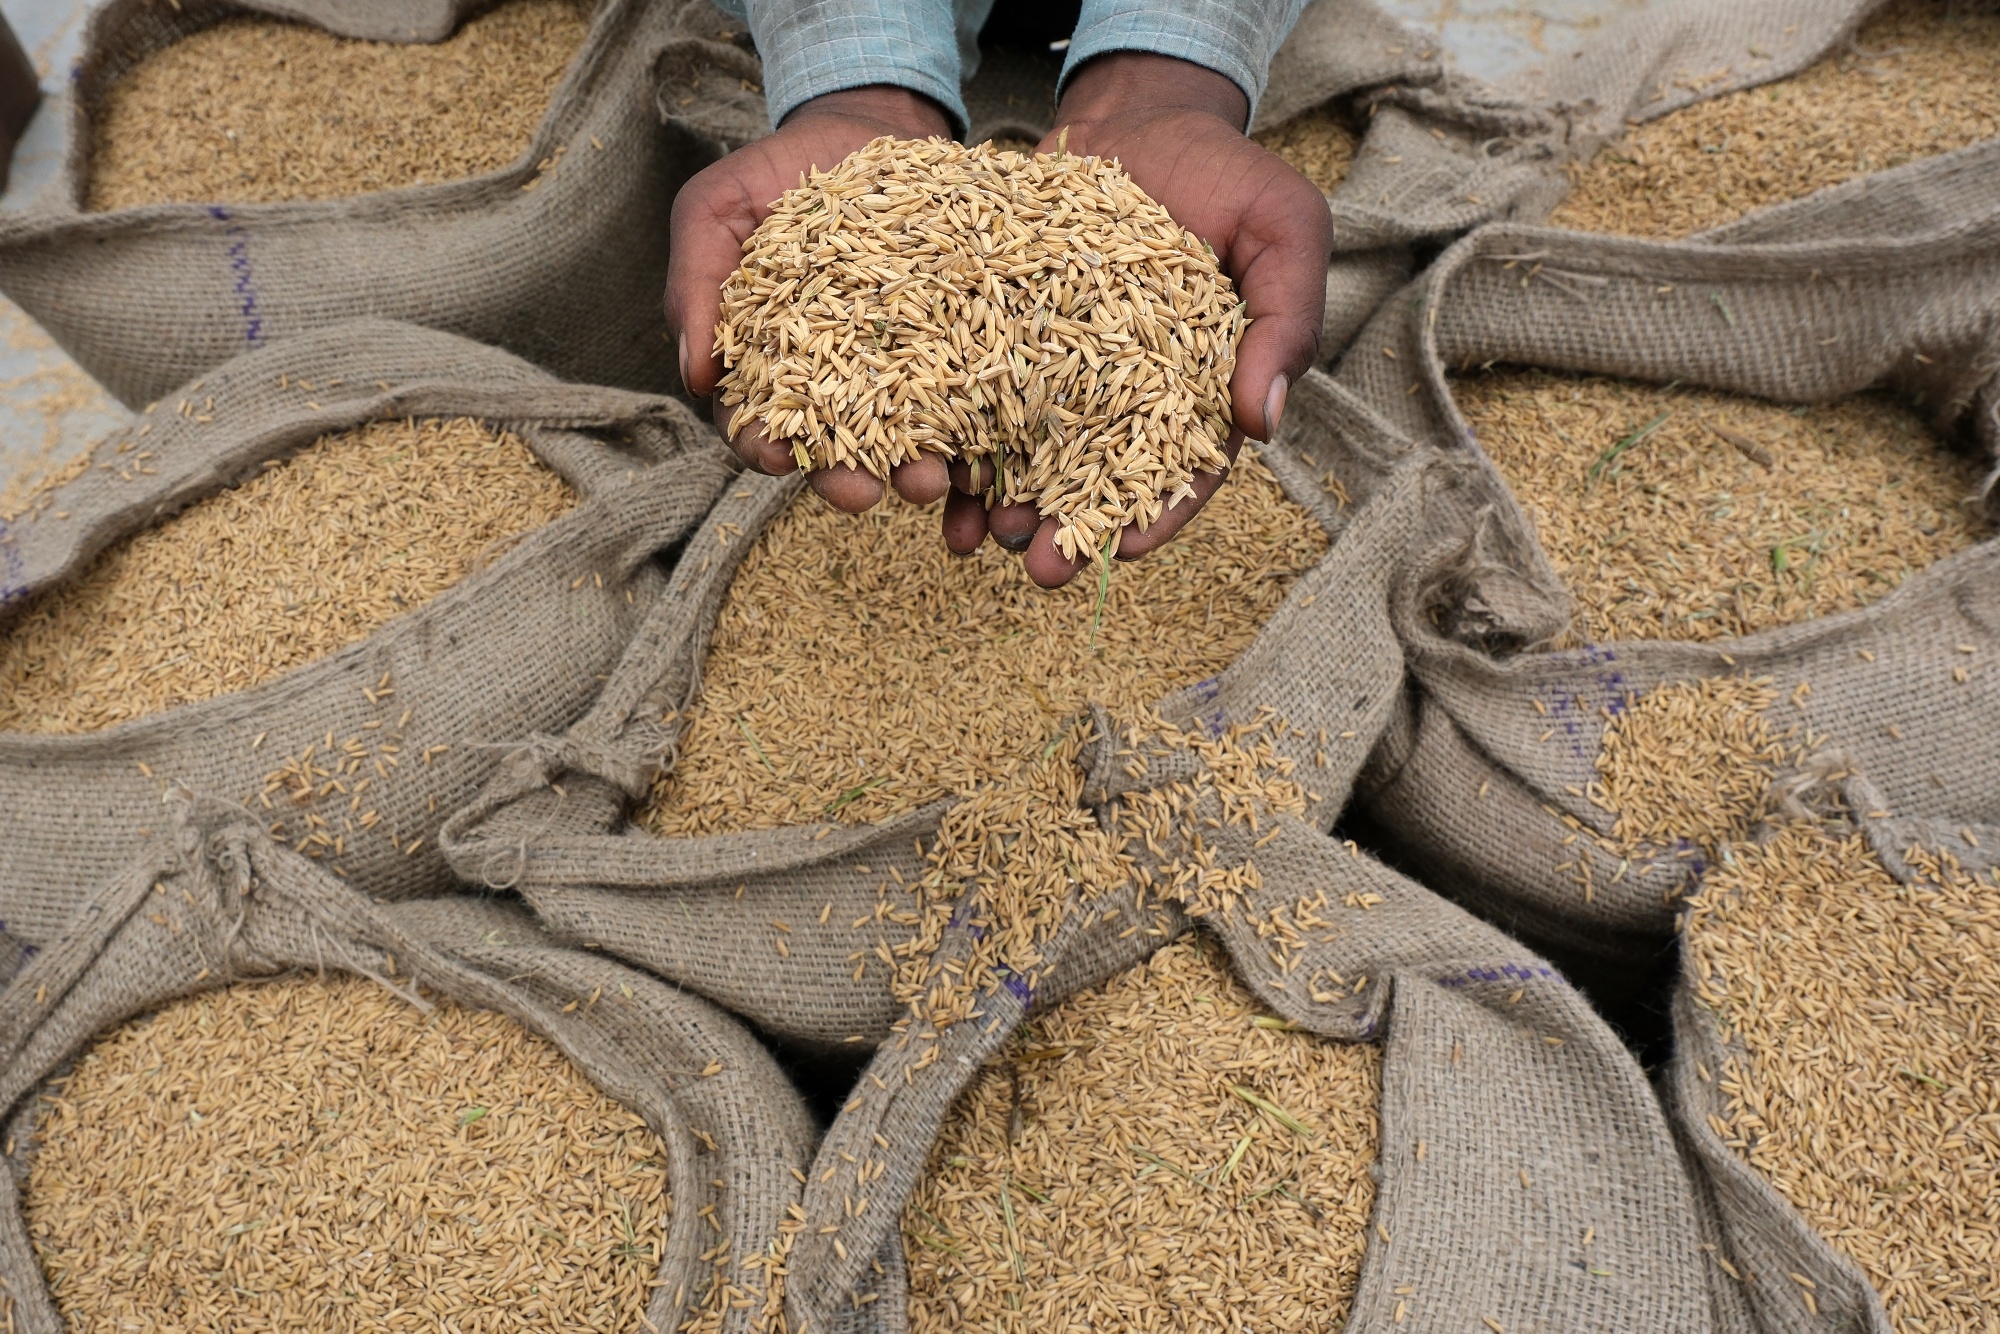 الهند تعفي بعض الدول من قيود تصدير الأرز